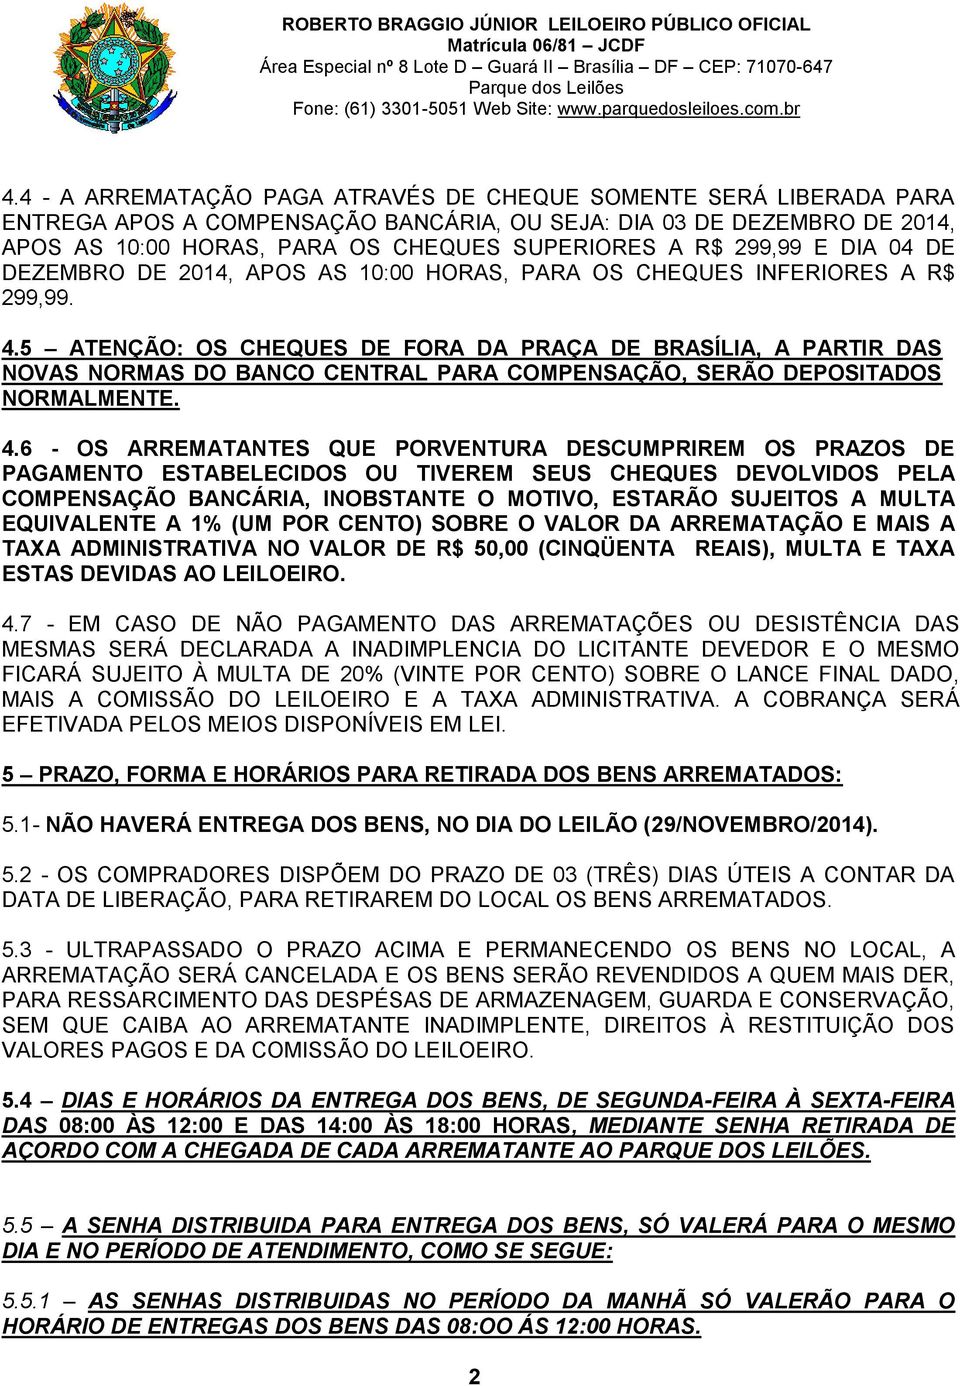 5 ATENÇÃO: OS CHEQUES DE FORA DA PRAÇA DE BRASÍLIA, A PARTIR DAS NOVAS NORMAS DO BANCO CENTRAL PARA COMPENSAÇÃO, SERÃO DEPOSITADOS NORMALMENTE. 4.